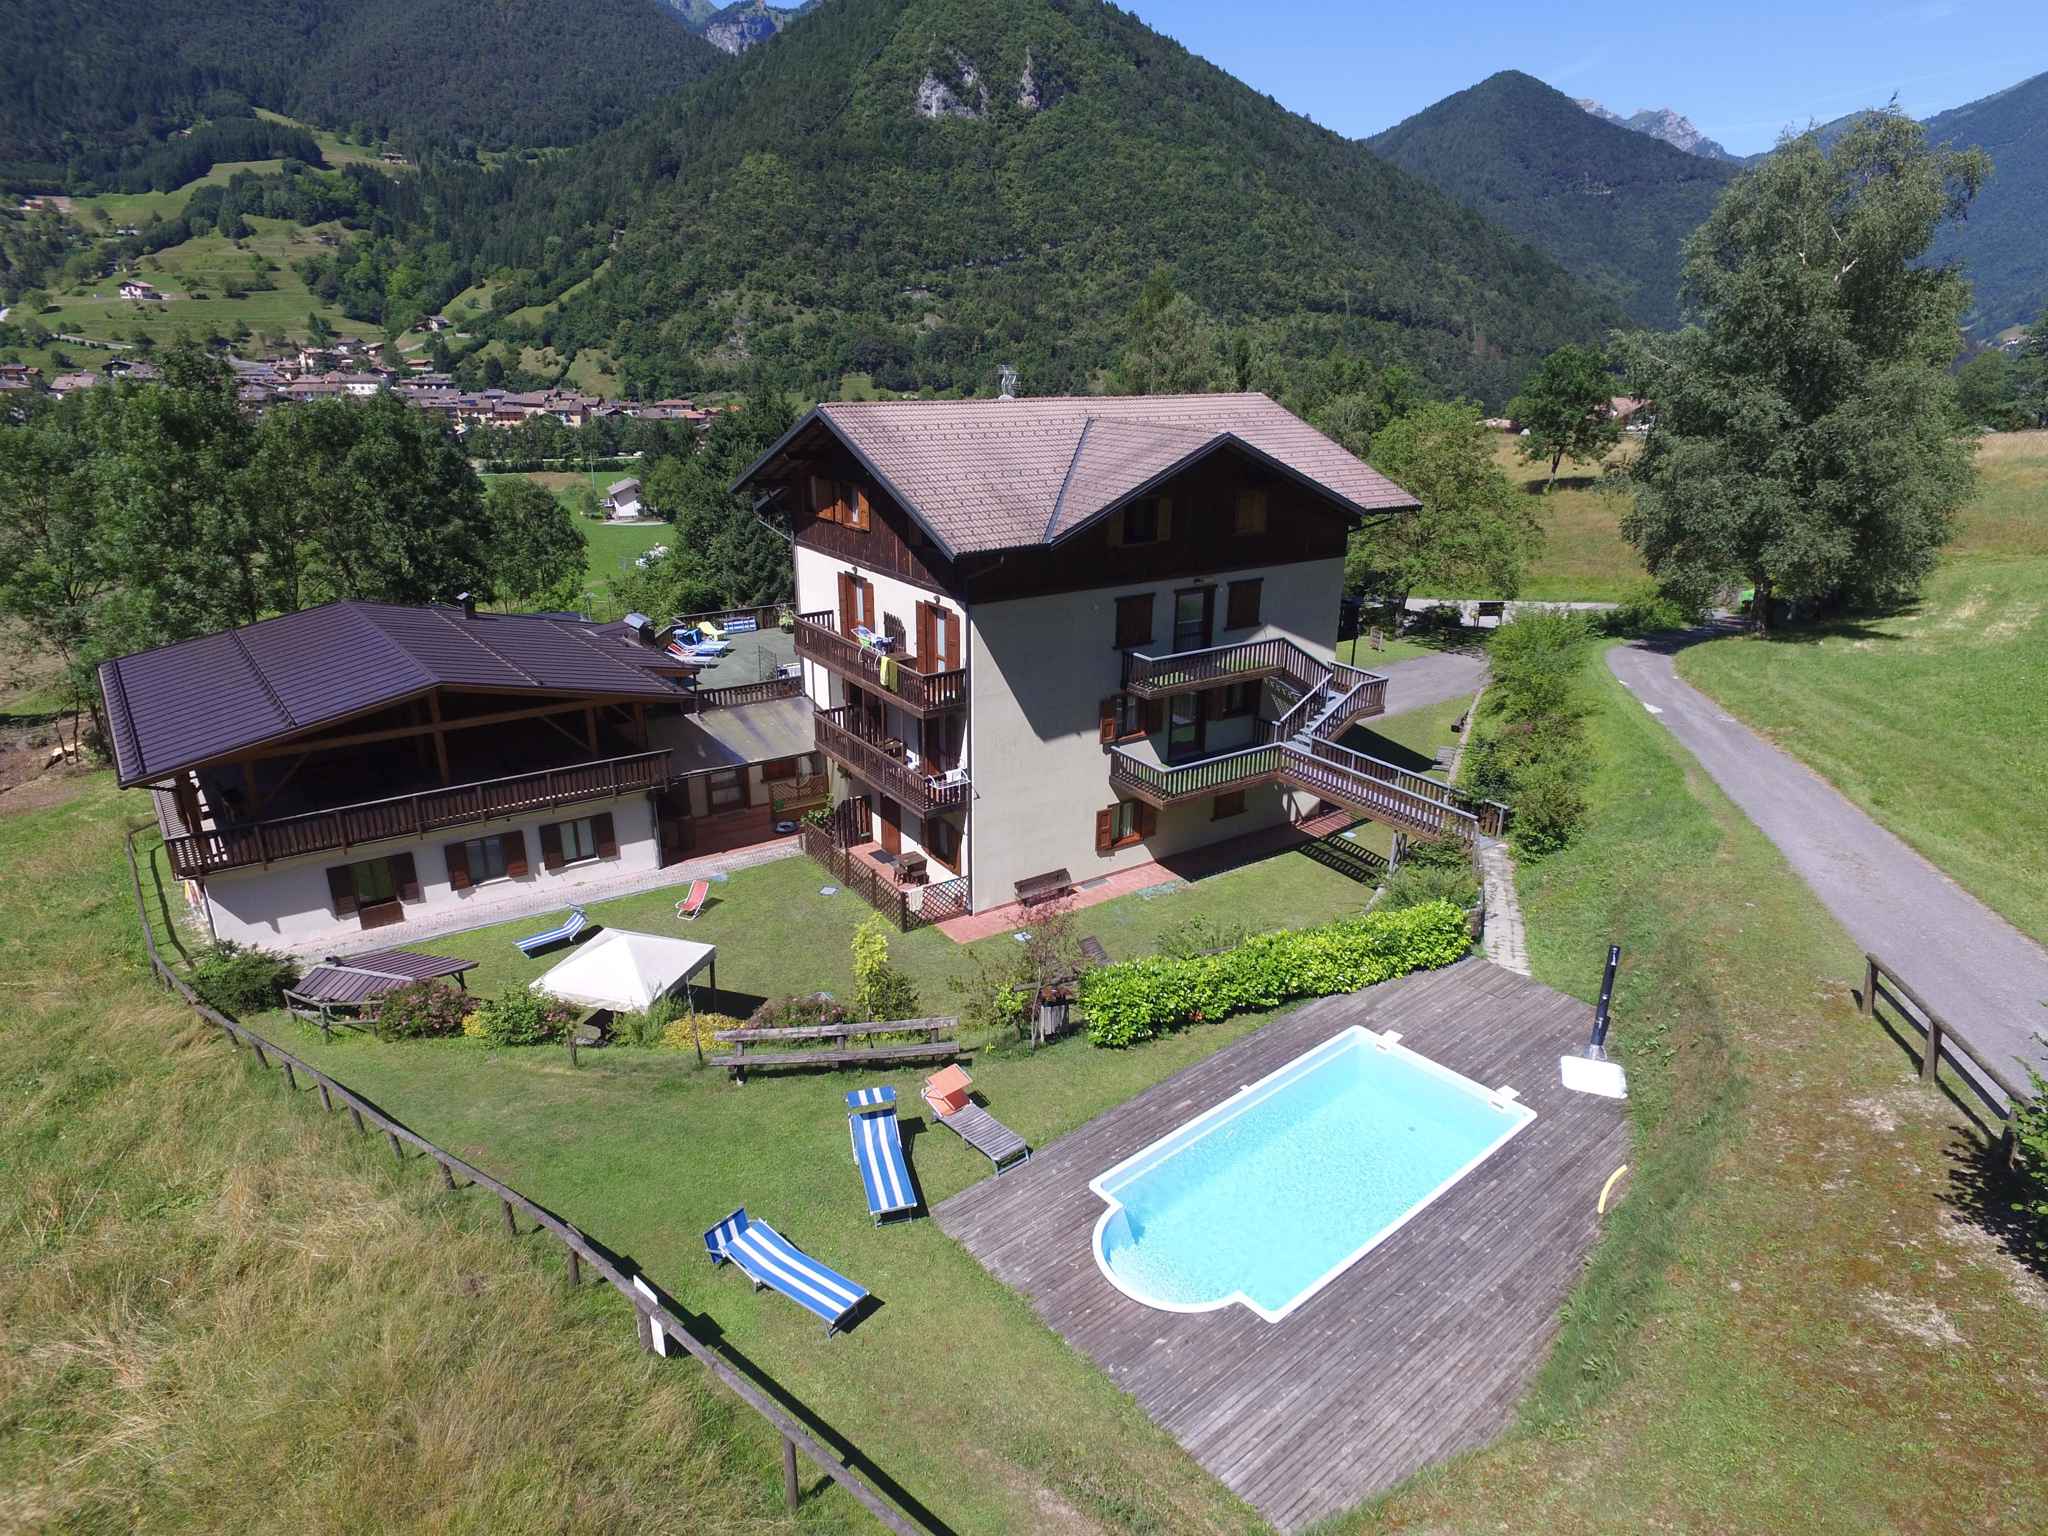 Ferienhaus mit Pool und Terrasse , in der Näh  in Italien